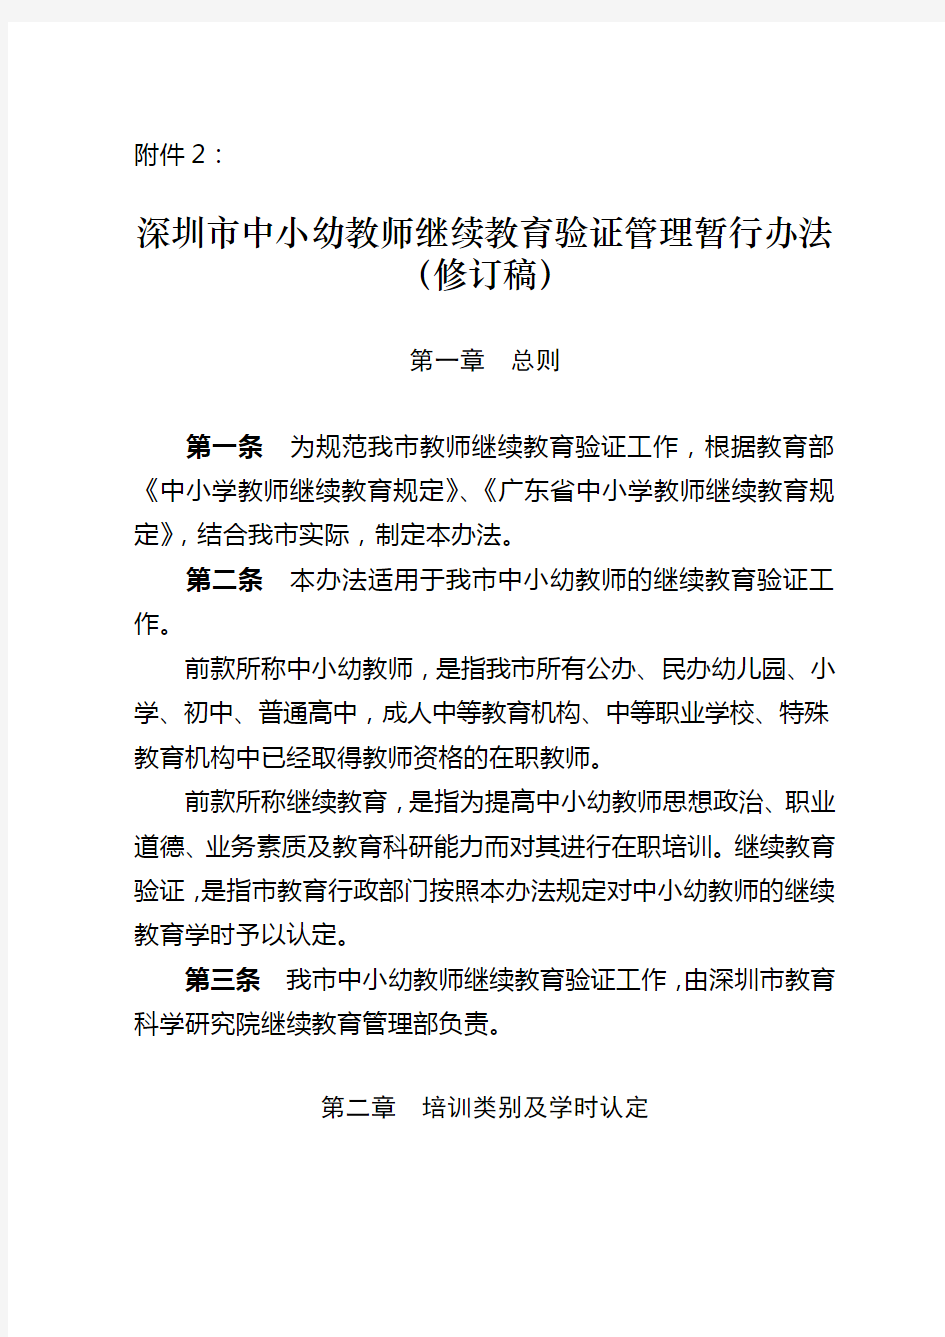 深圳市中小学教师继续教育管理暂行办法